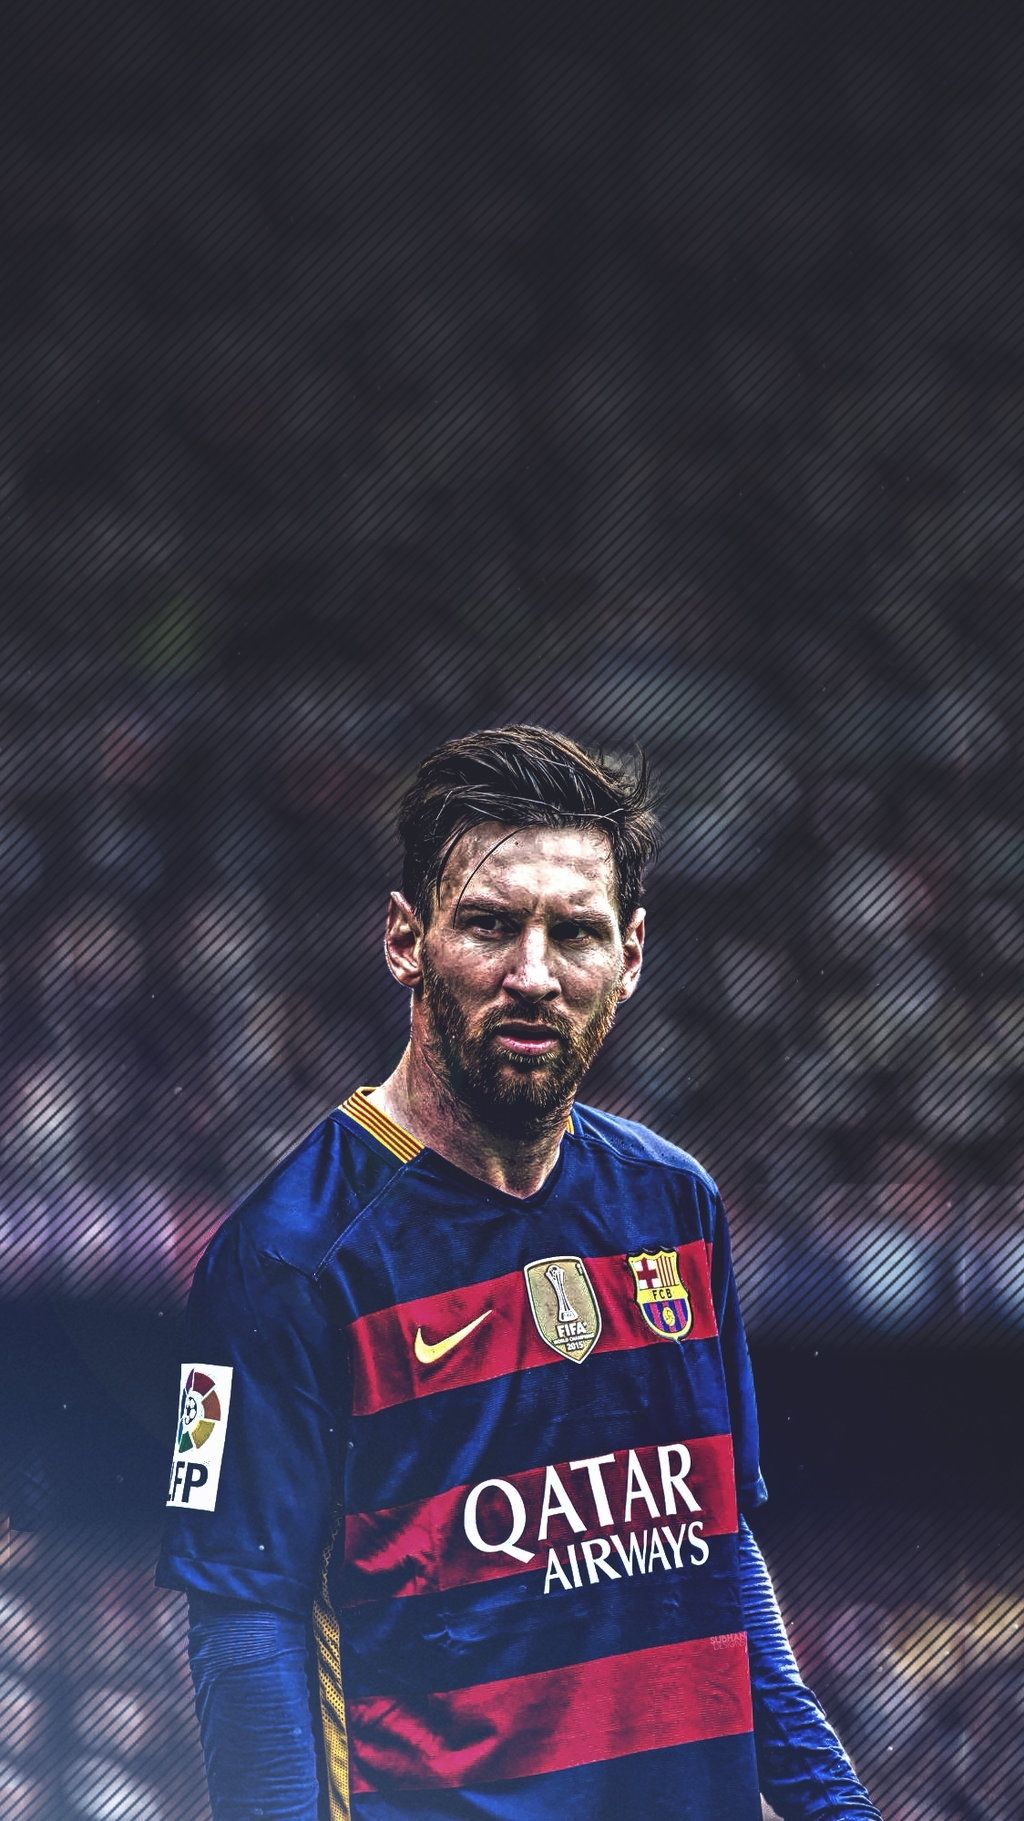 Được biết đến với tài năng bóng đá vô địch thế giới, Messi là một trong những cầu thủ hàng đầu trong lịch sử. Hãy xem hình ảnh của anh ta để tìm hiểu về sự nghiệp và thành tích của Messi.